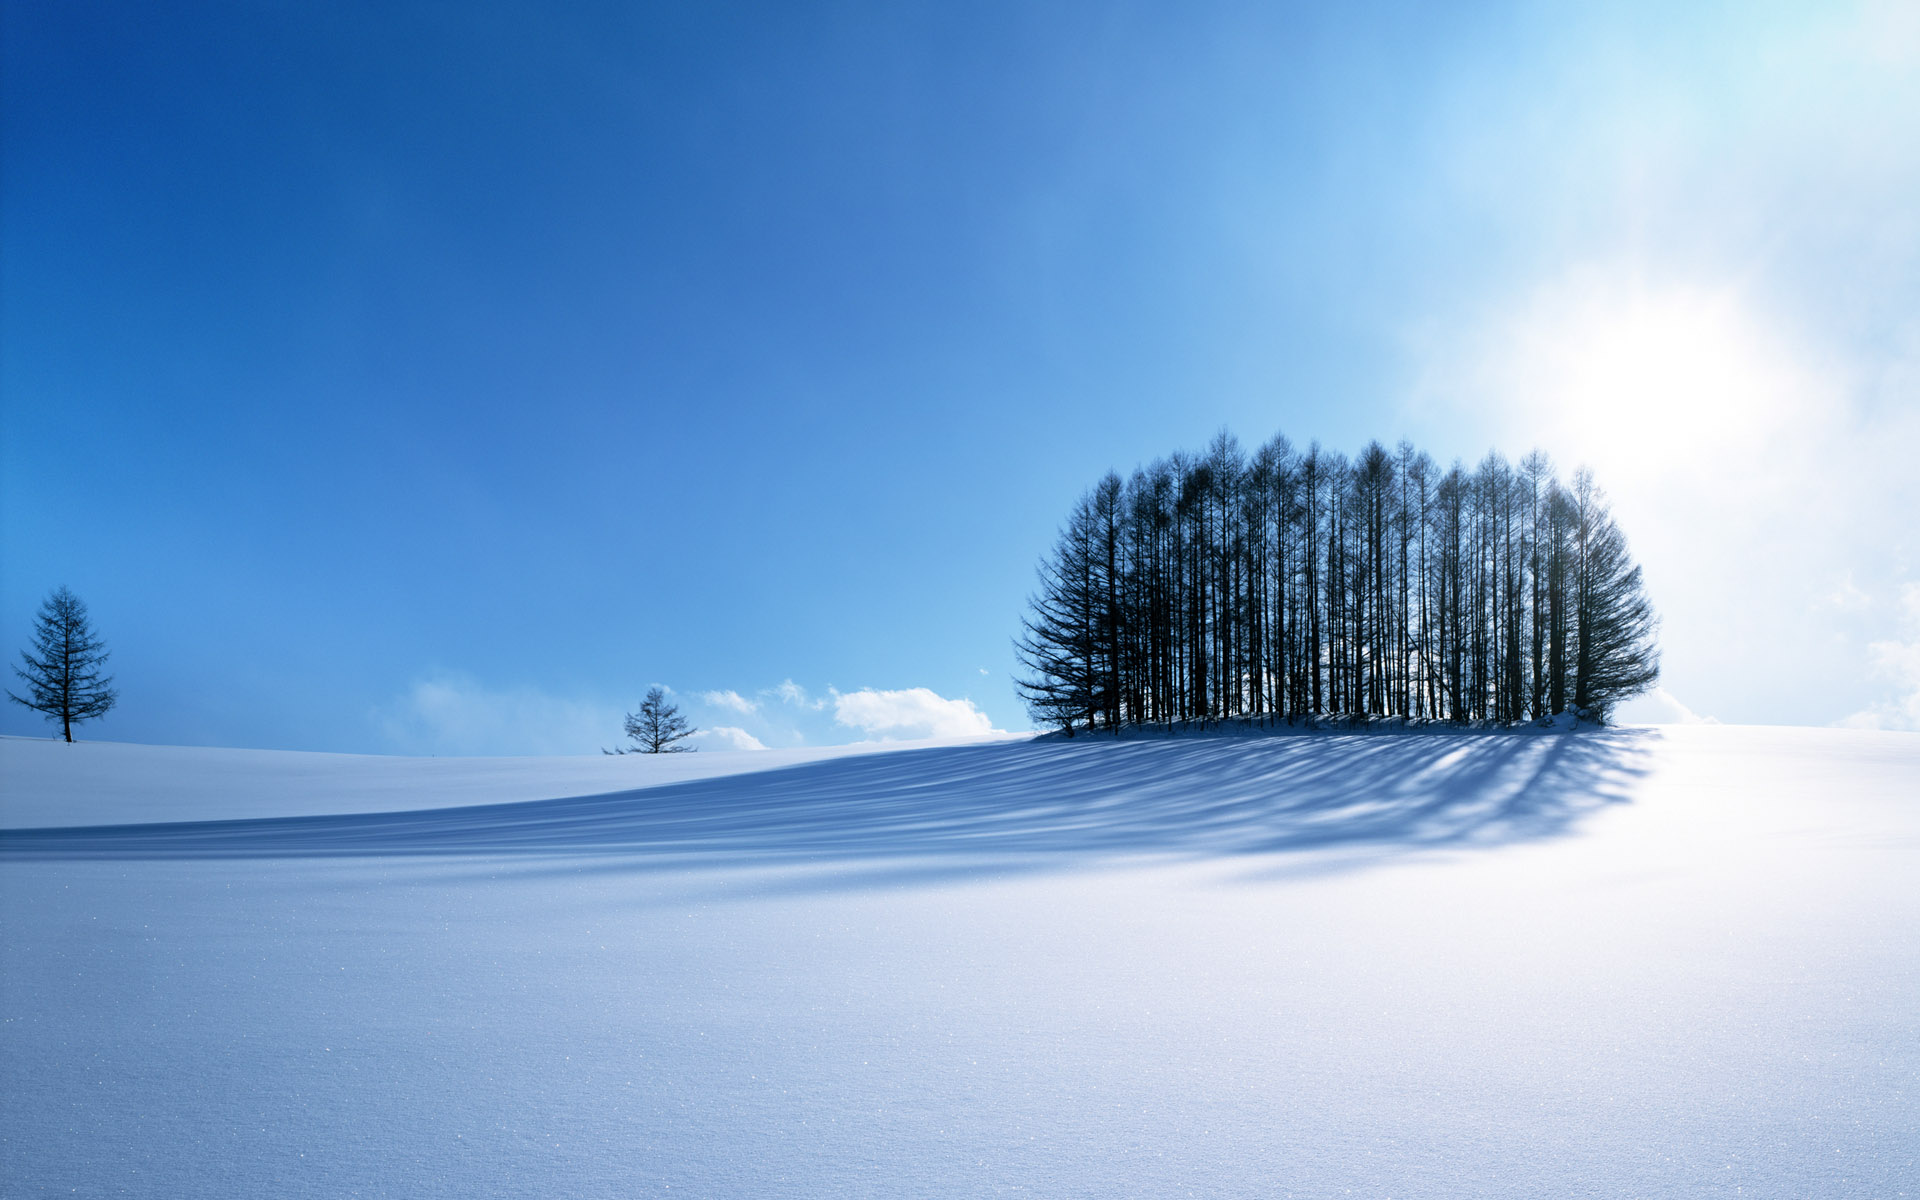 Скачать обои бесплатно Зима, Снег, Ландшафт, Земля/природа картинка на рабочий стол ПК